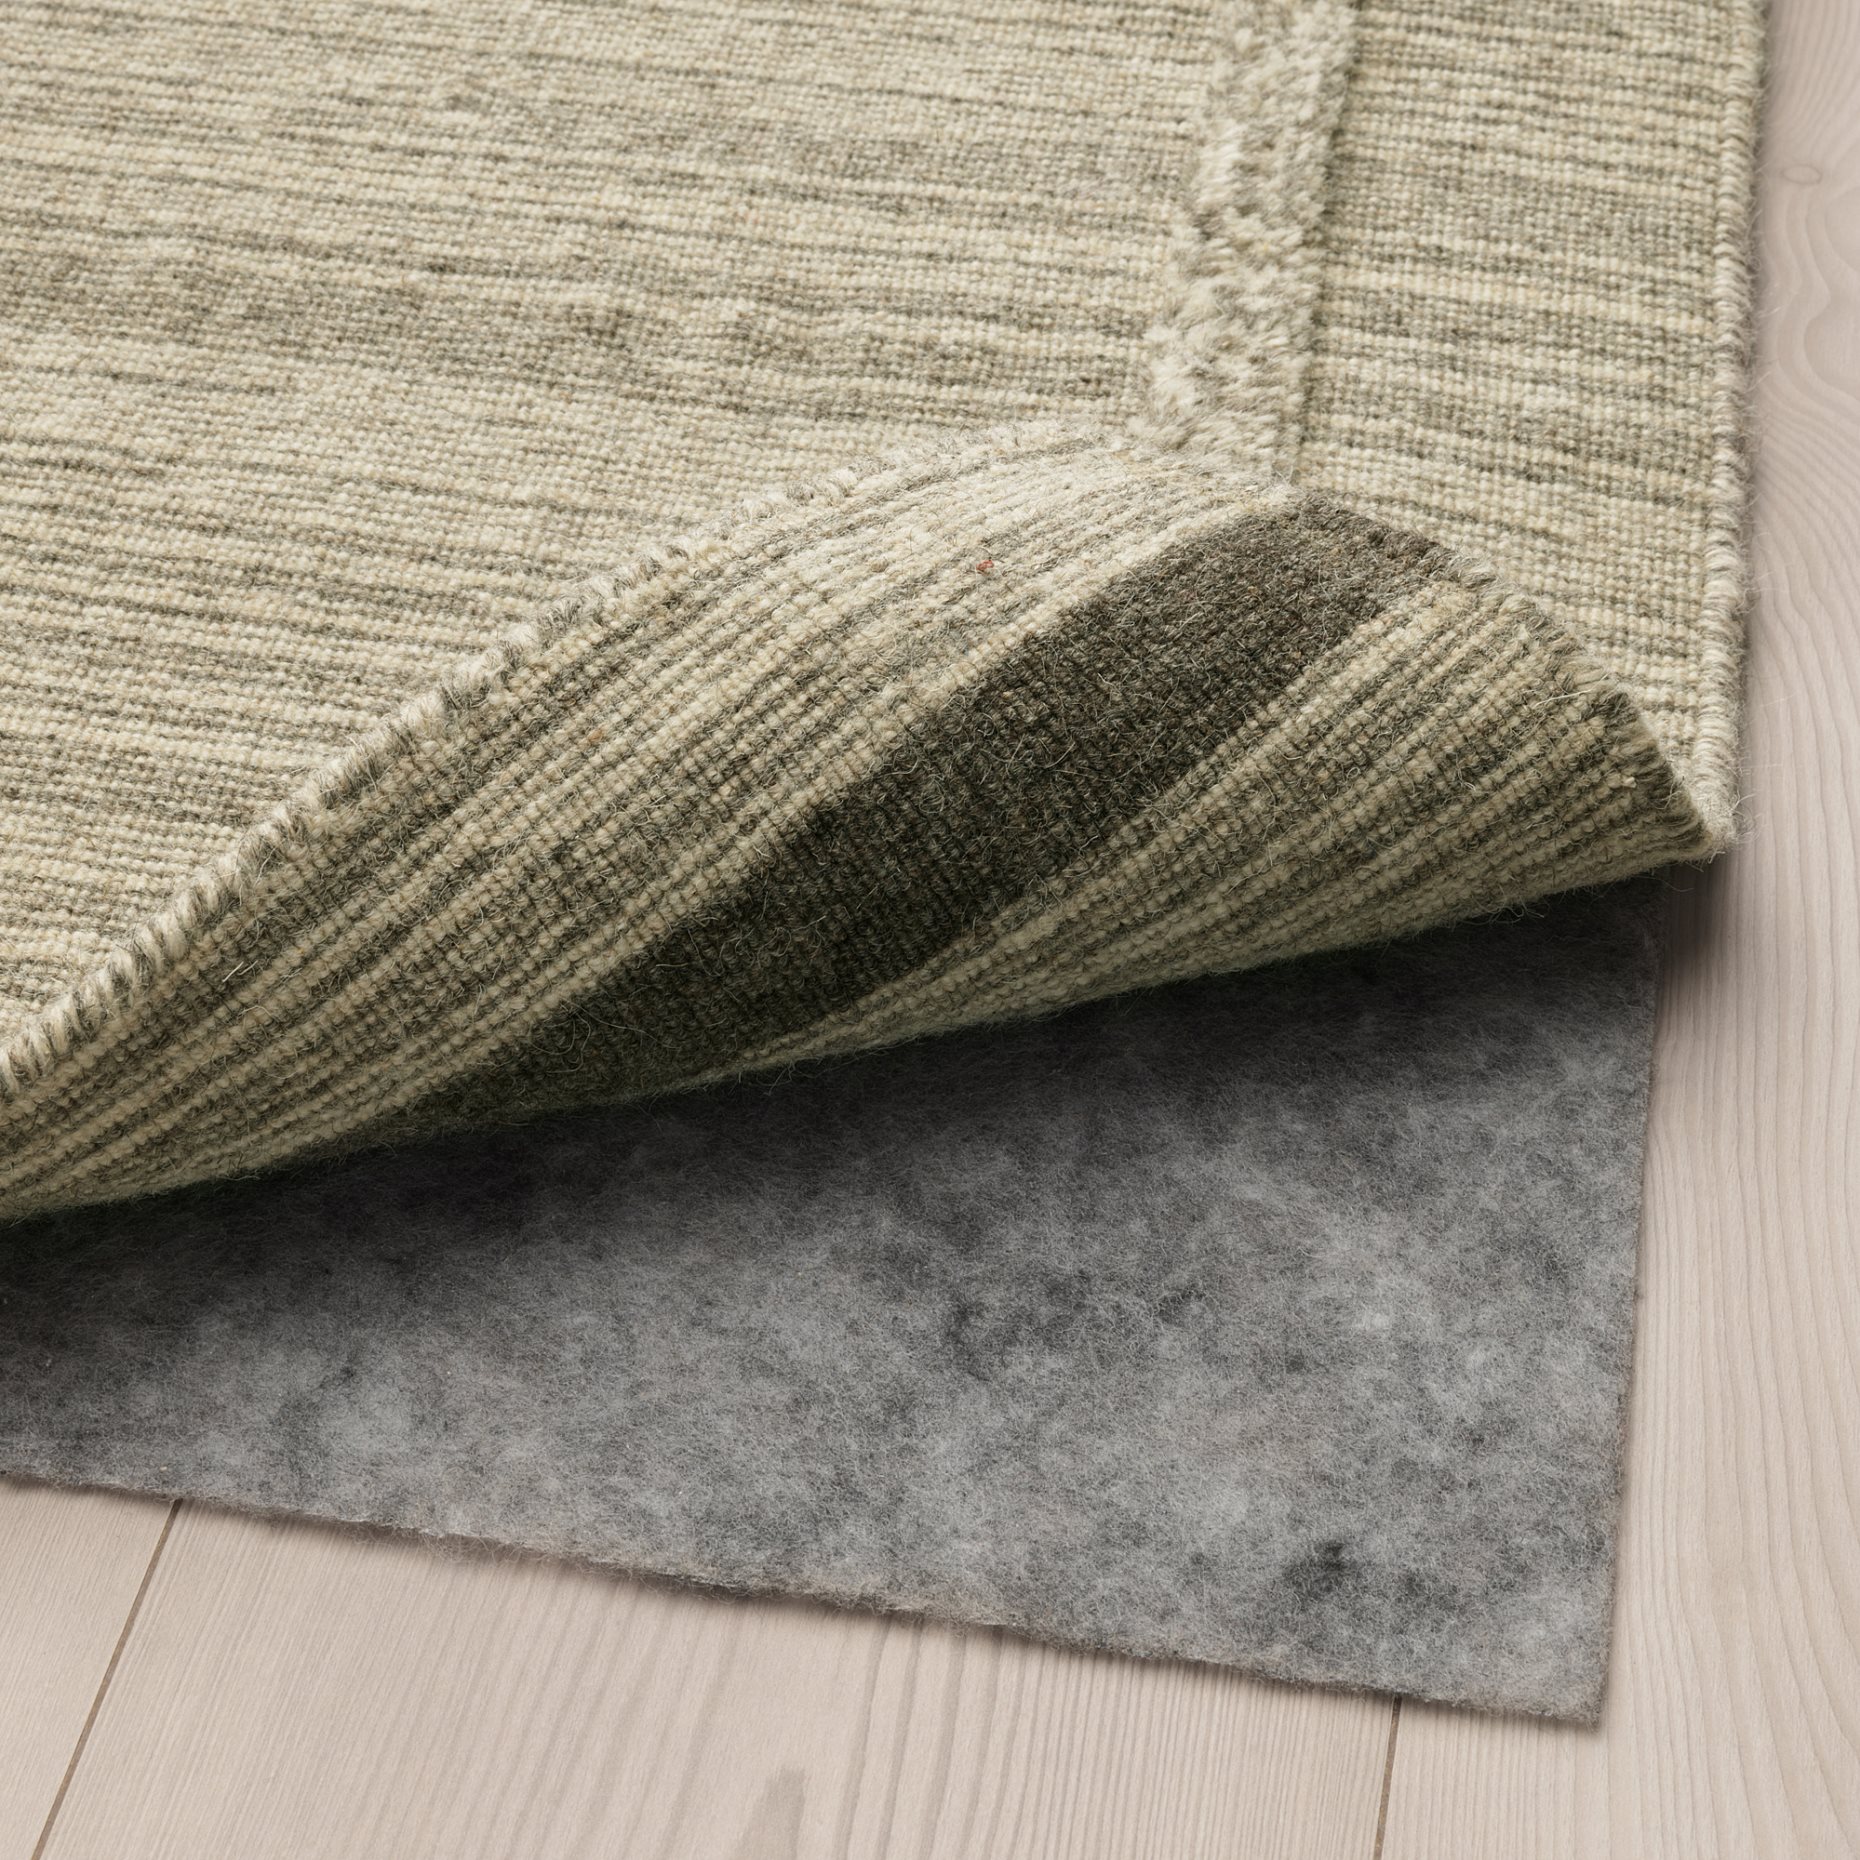 STOPP FILT, подложка за килим против хлъзгане, 190х280 см, 205.502.04